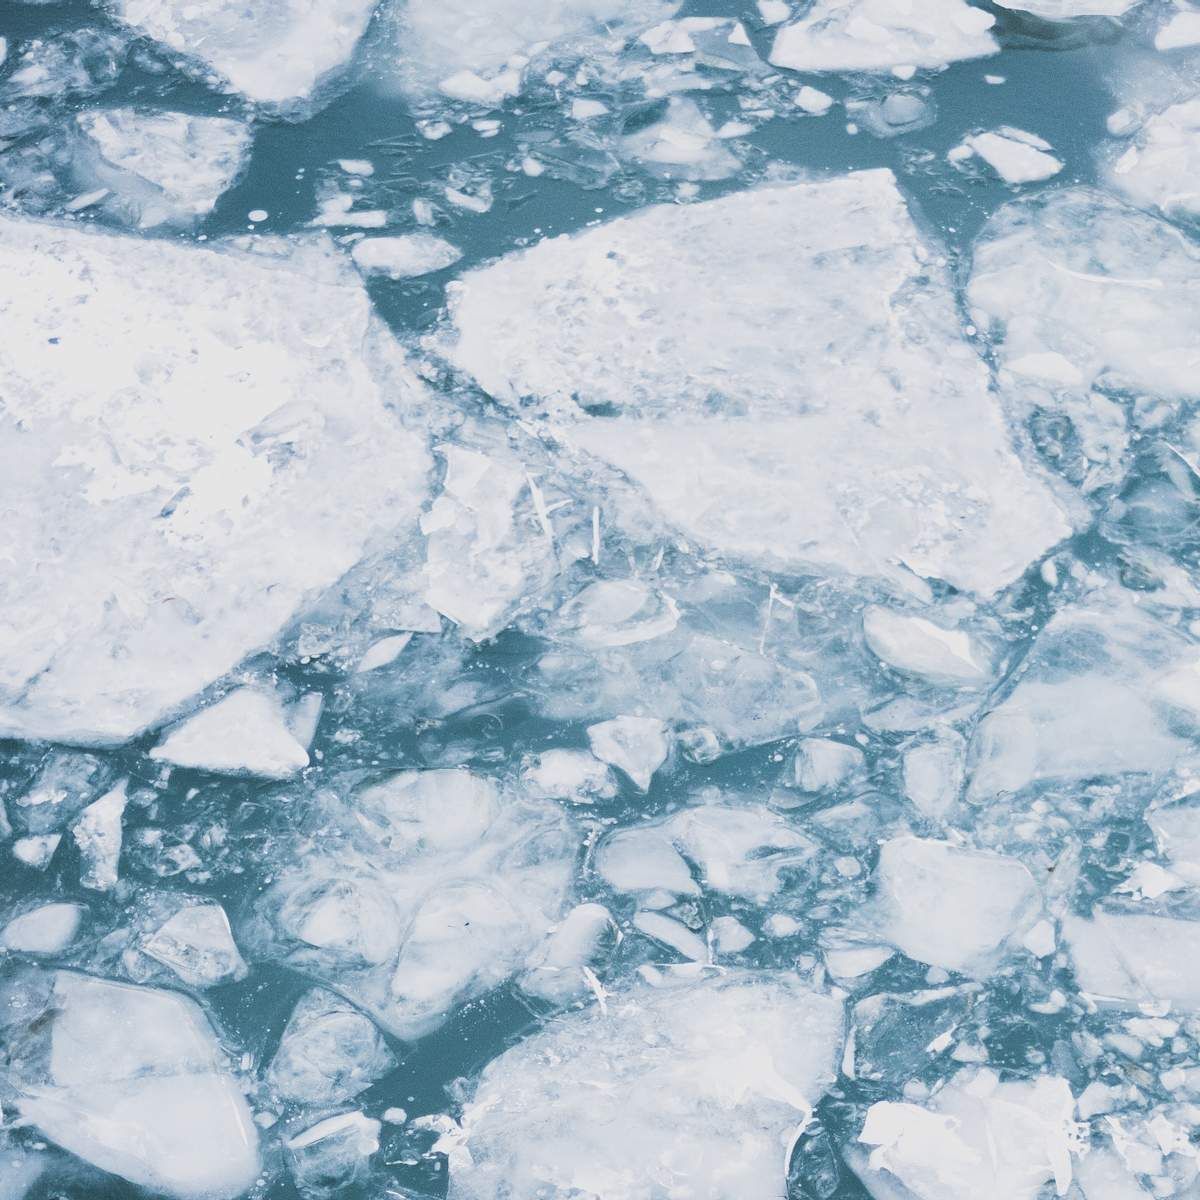 "Хотели проверить прочность льда": в Херсонской области дети провалились в ледяную воду